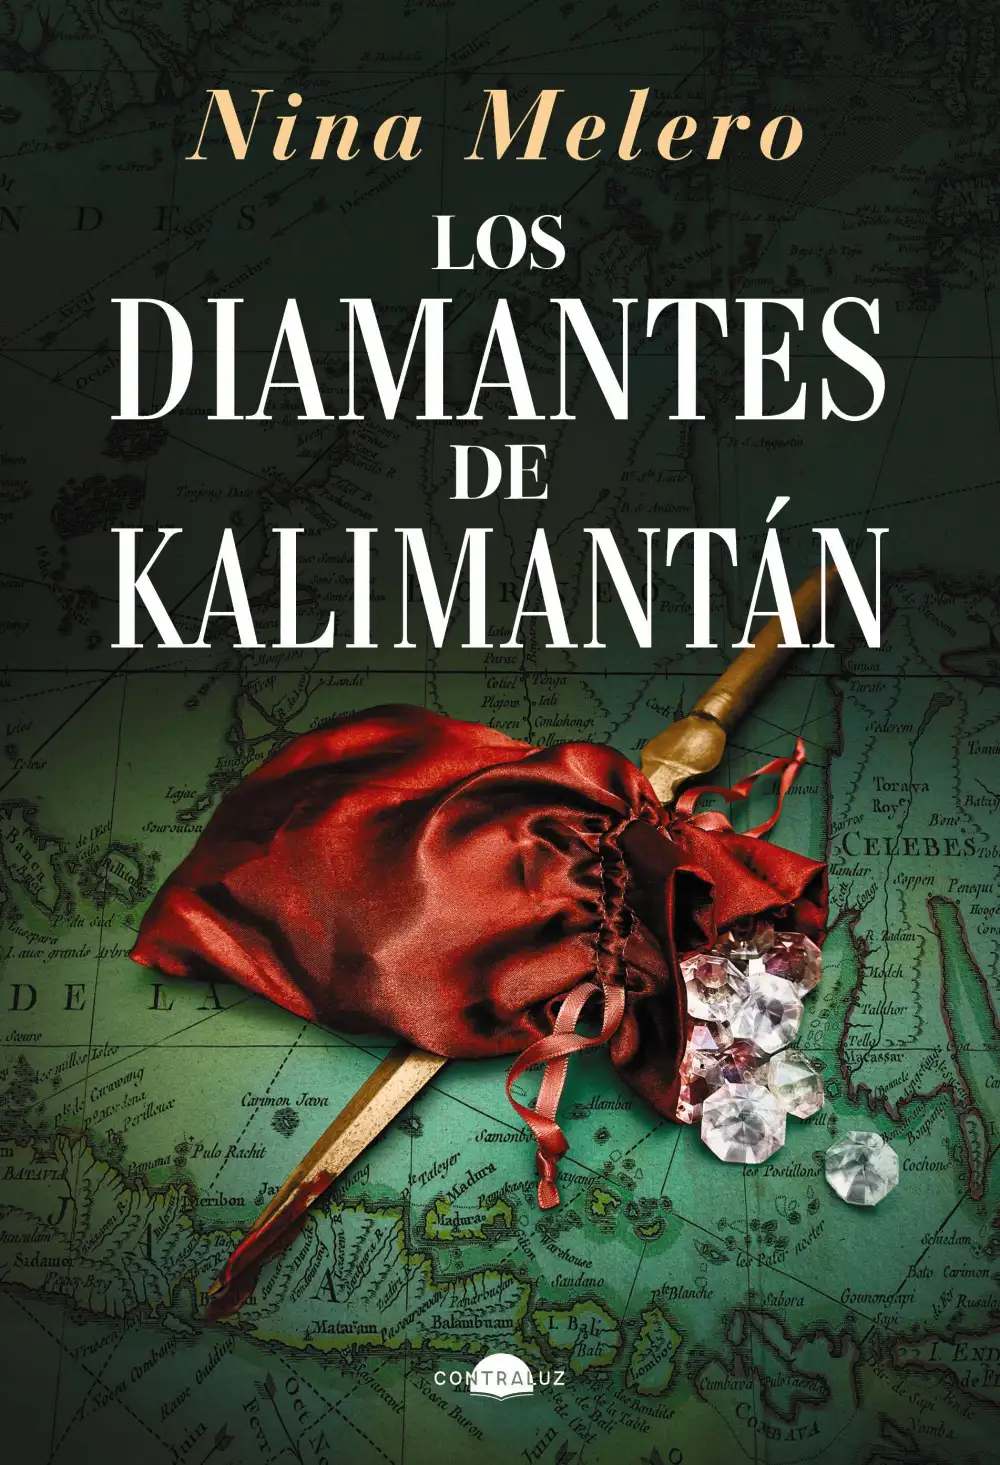 Portada de Los diamantes de Kalimantán, con bolsa de diamantes sobre daga